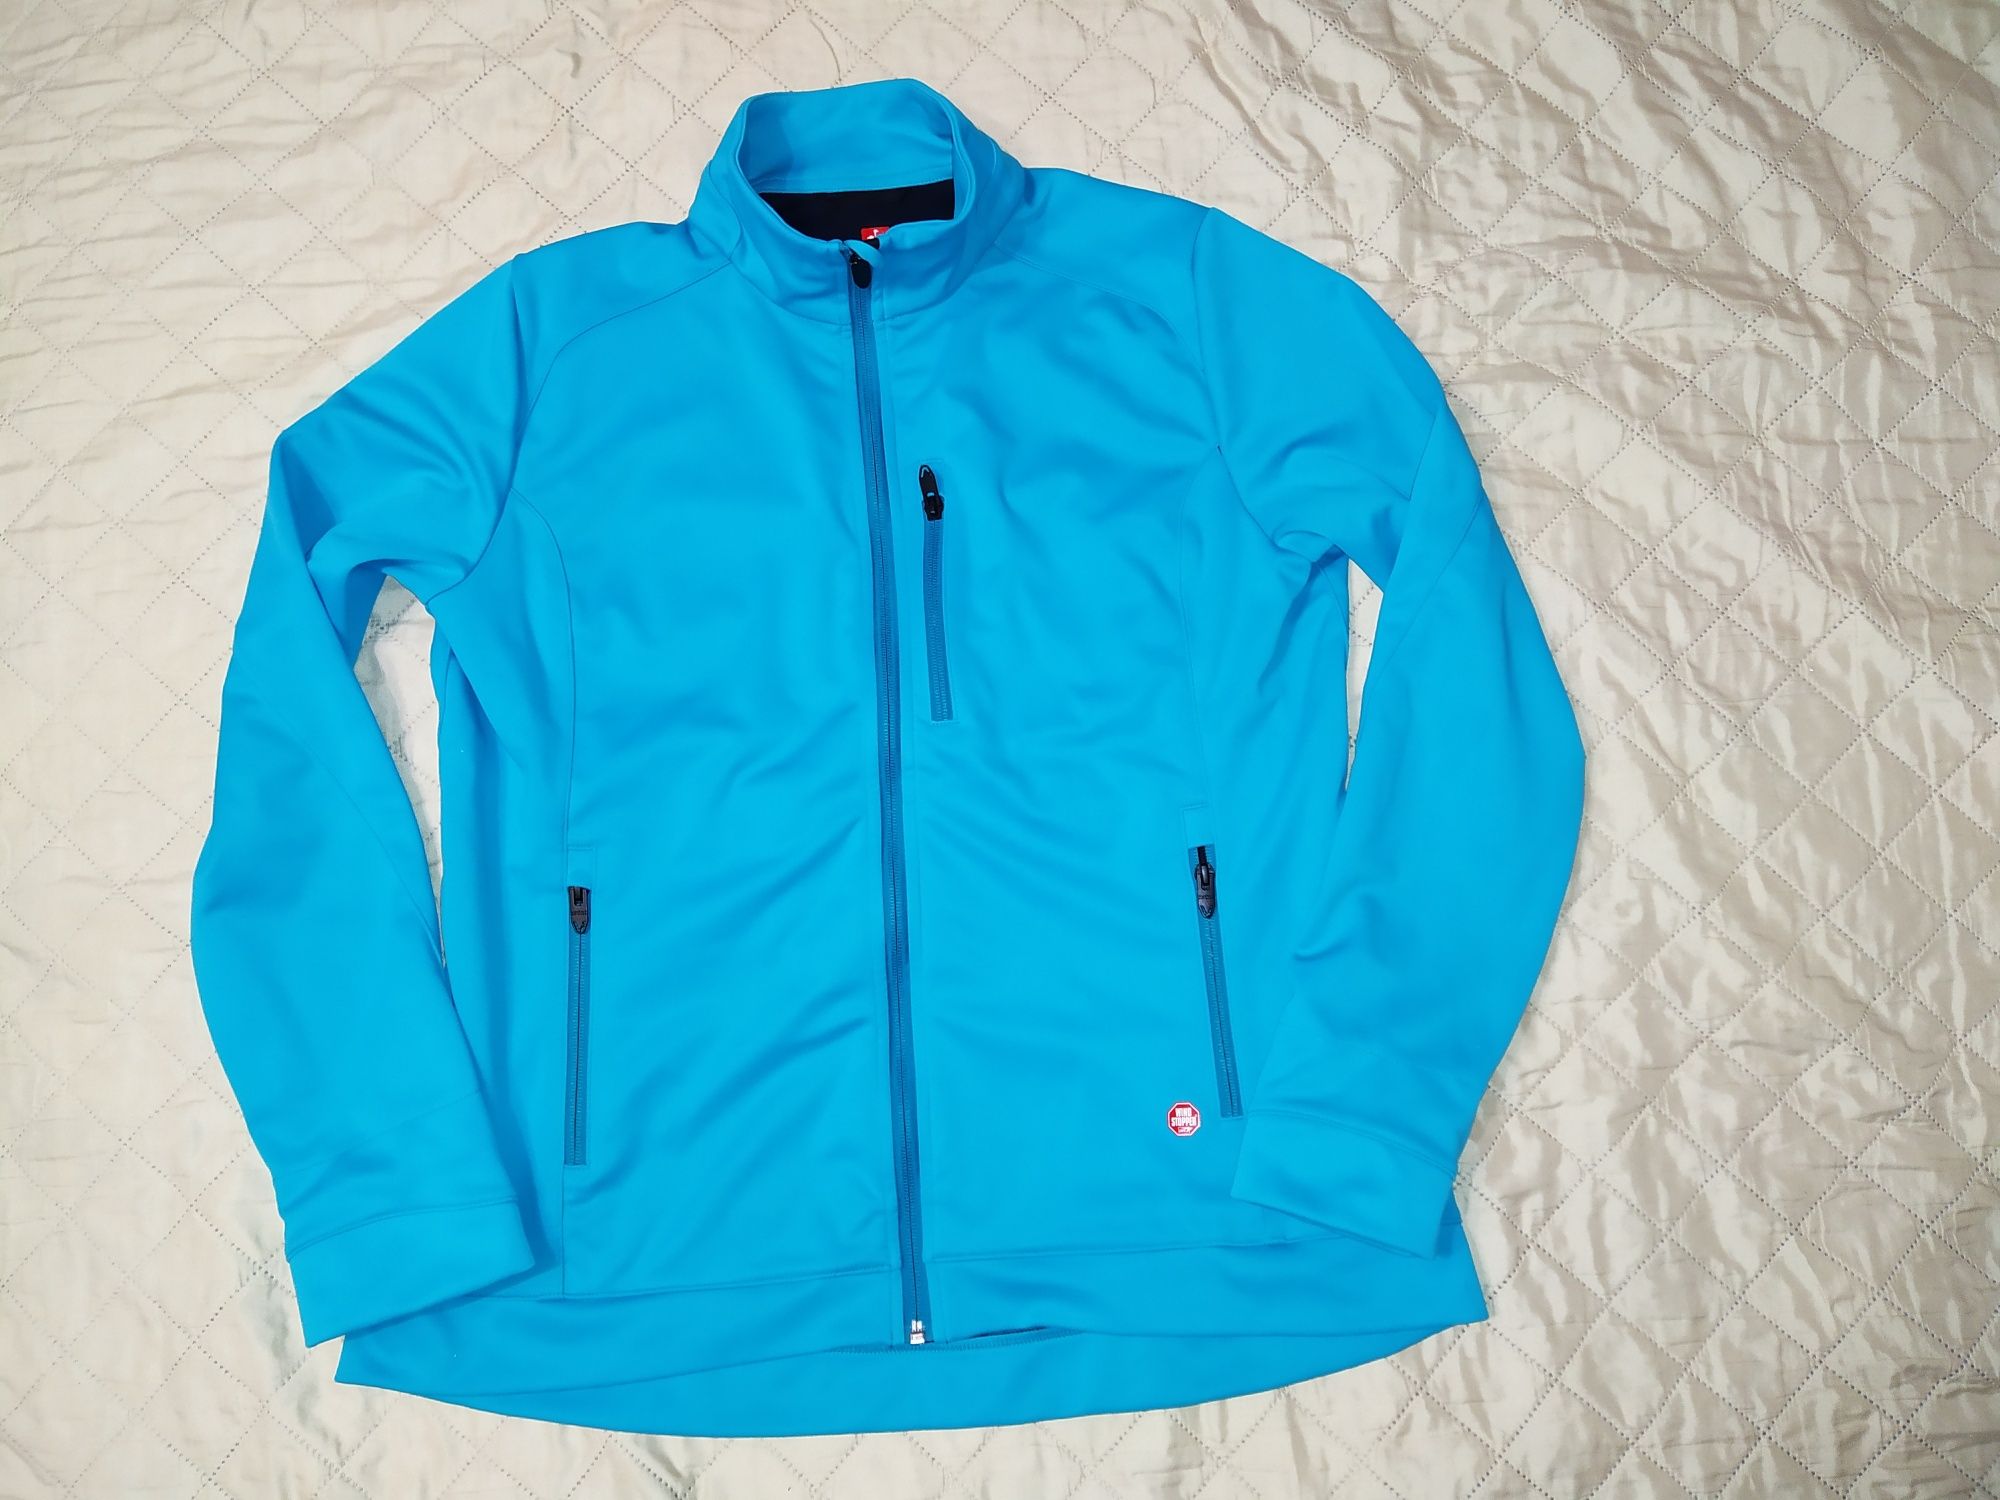 Трекинговая софтшельная куртка Engelbert STRAUSS XL